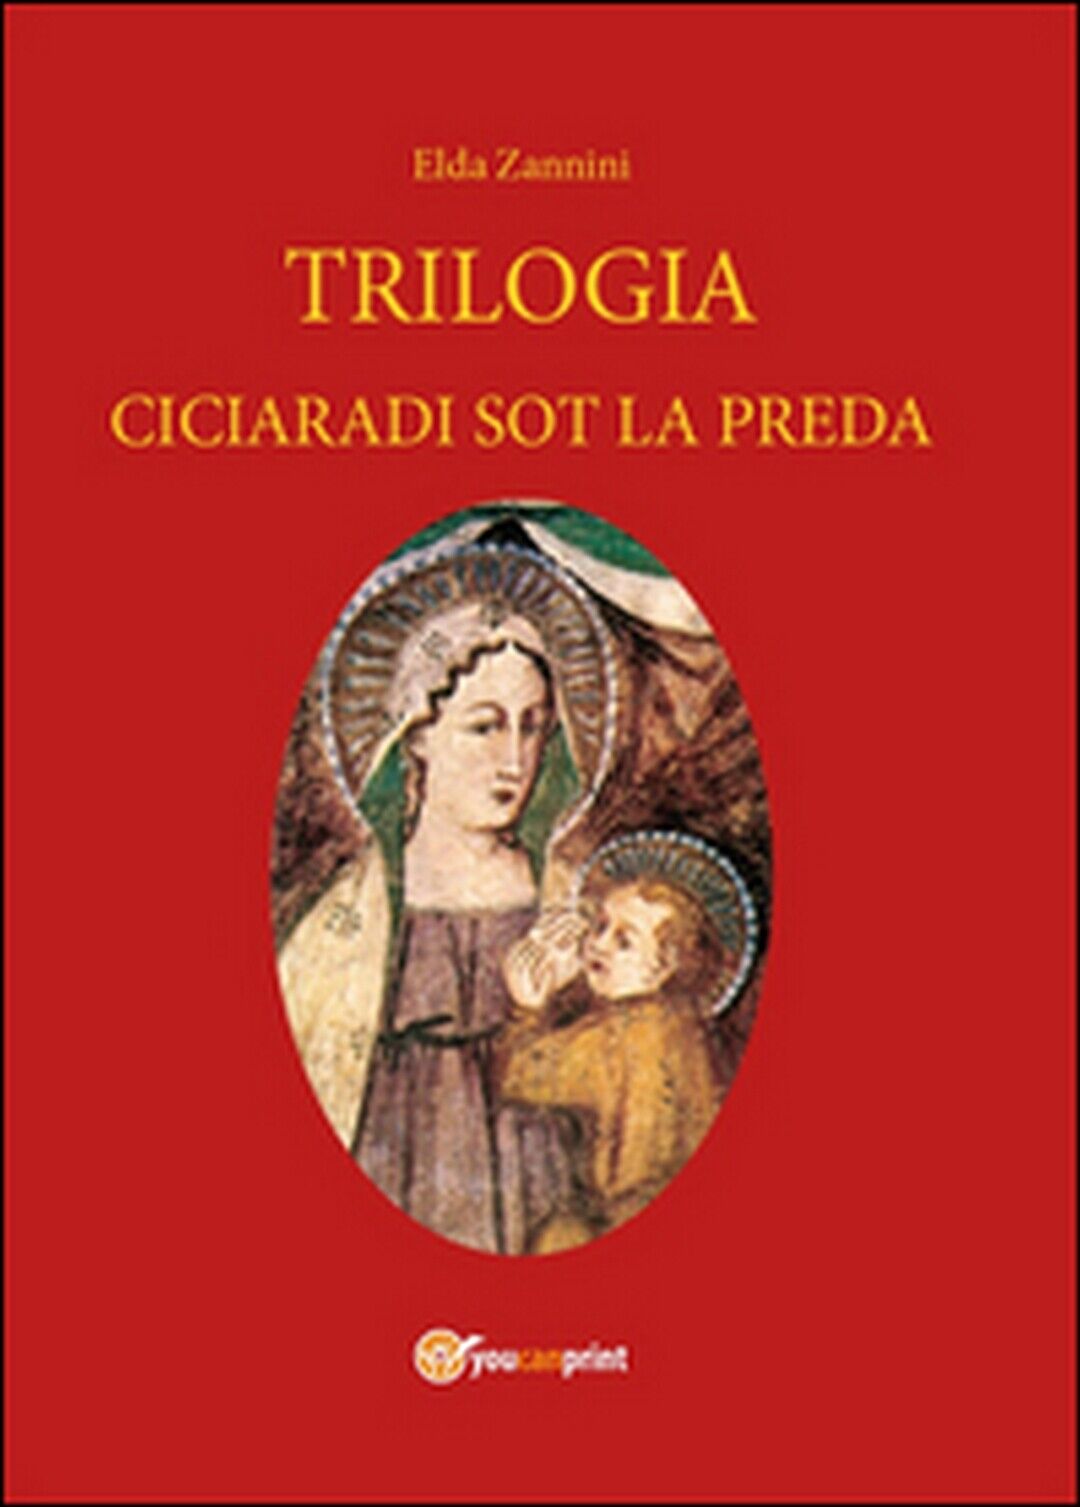 Trilogia. Testo reggiano e italiano  di Elda Zannini,  2014,  Youcanprint